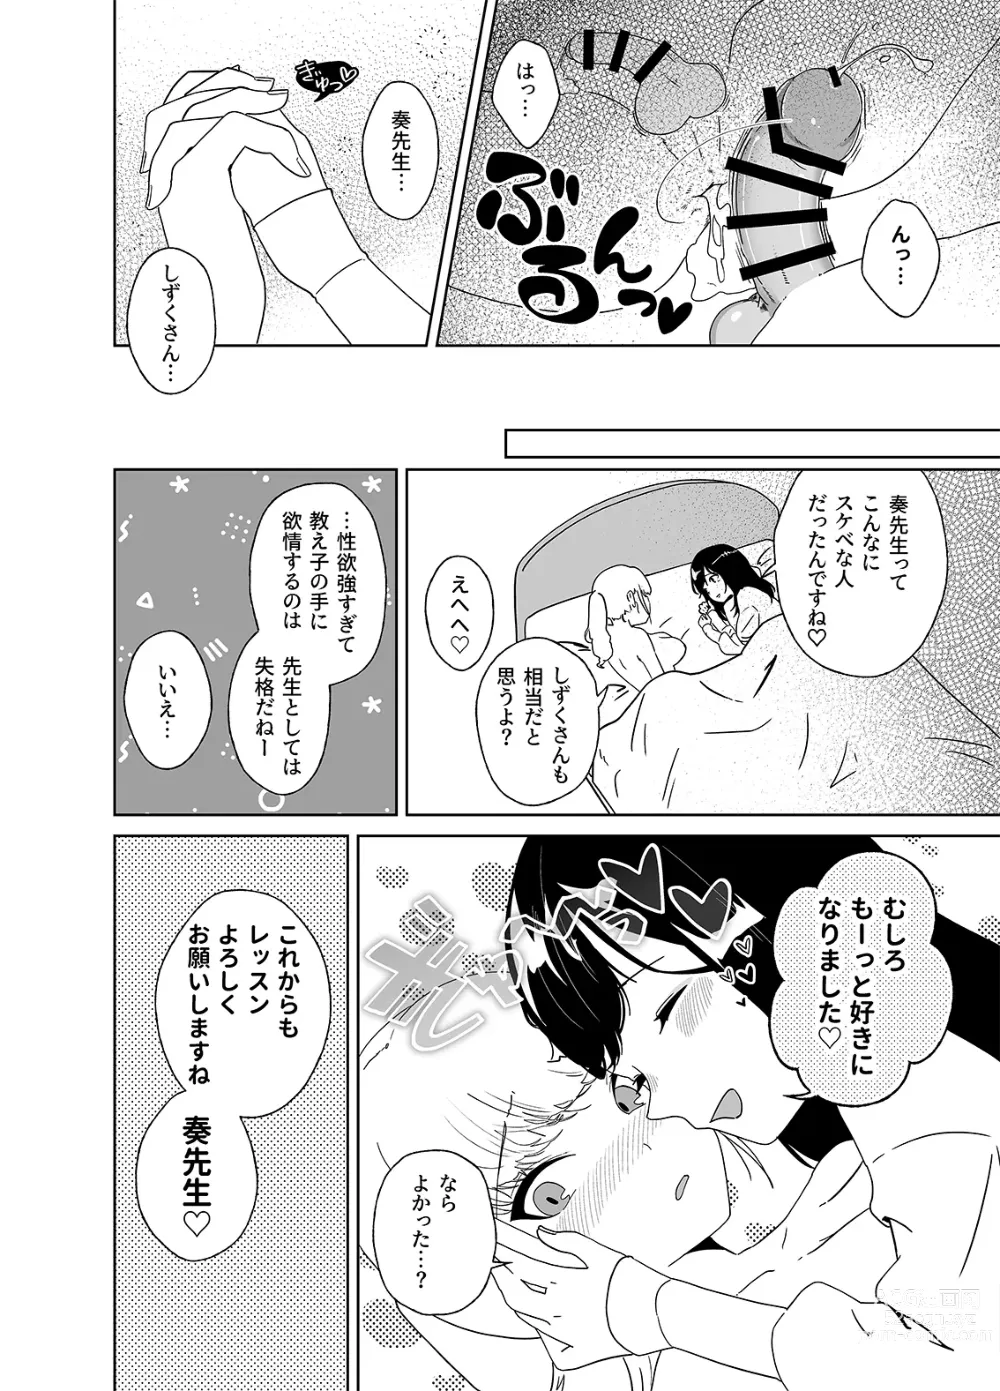 Page 32 of doujinshi Anata no o Tete de Watashi no Kokan ga ff